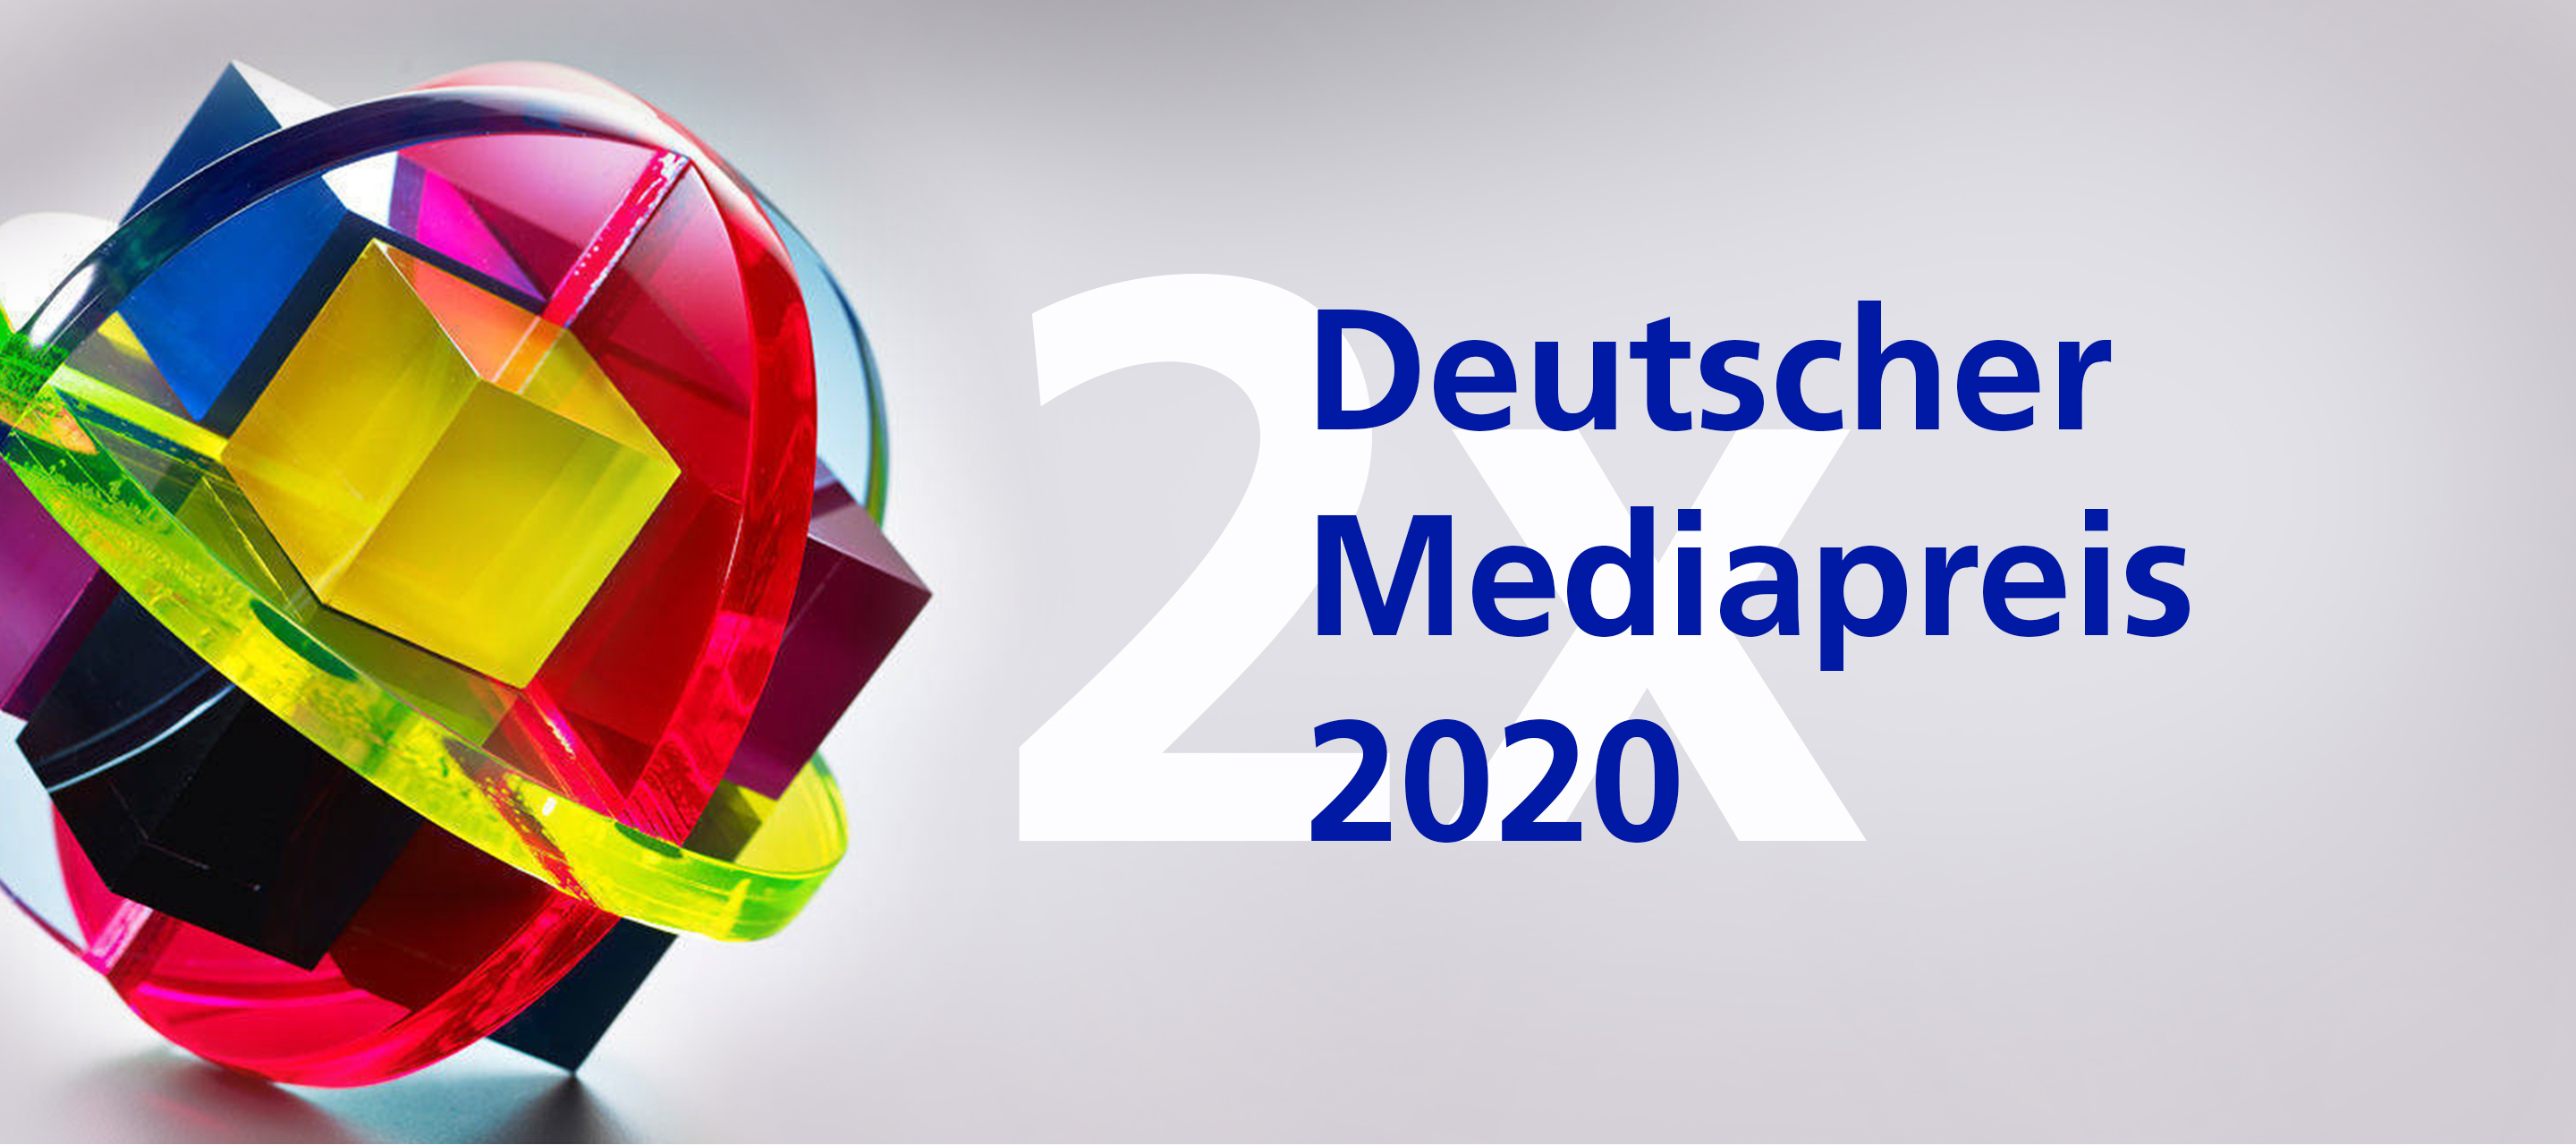 O₂ gewinnt gleich zweimal beim Deutschen Mediapreis 2020